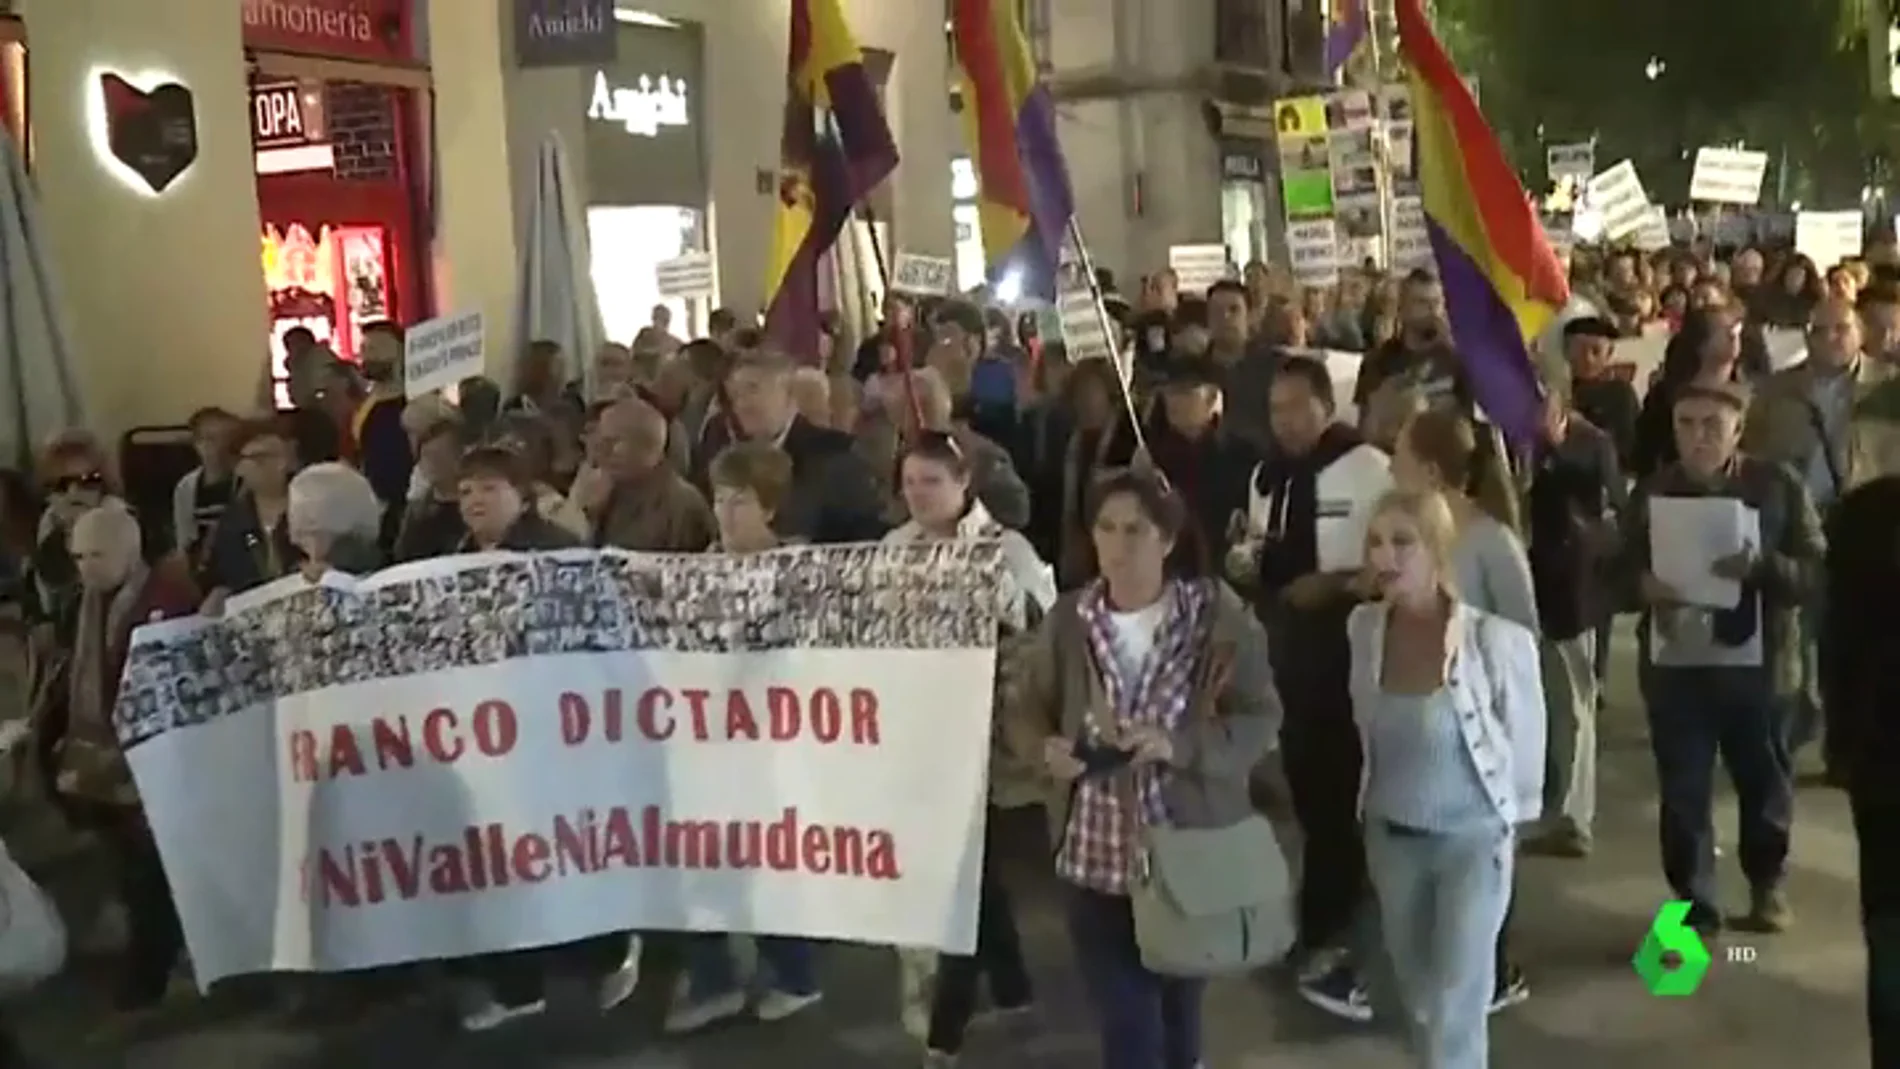 "El caudillo irá al contenedor amarillo": Manifestación en Madrid contra el traslado de Franco a La Almudena